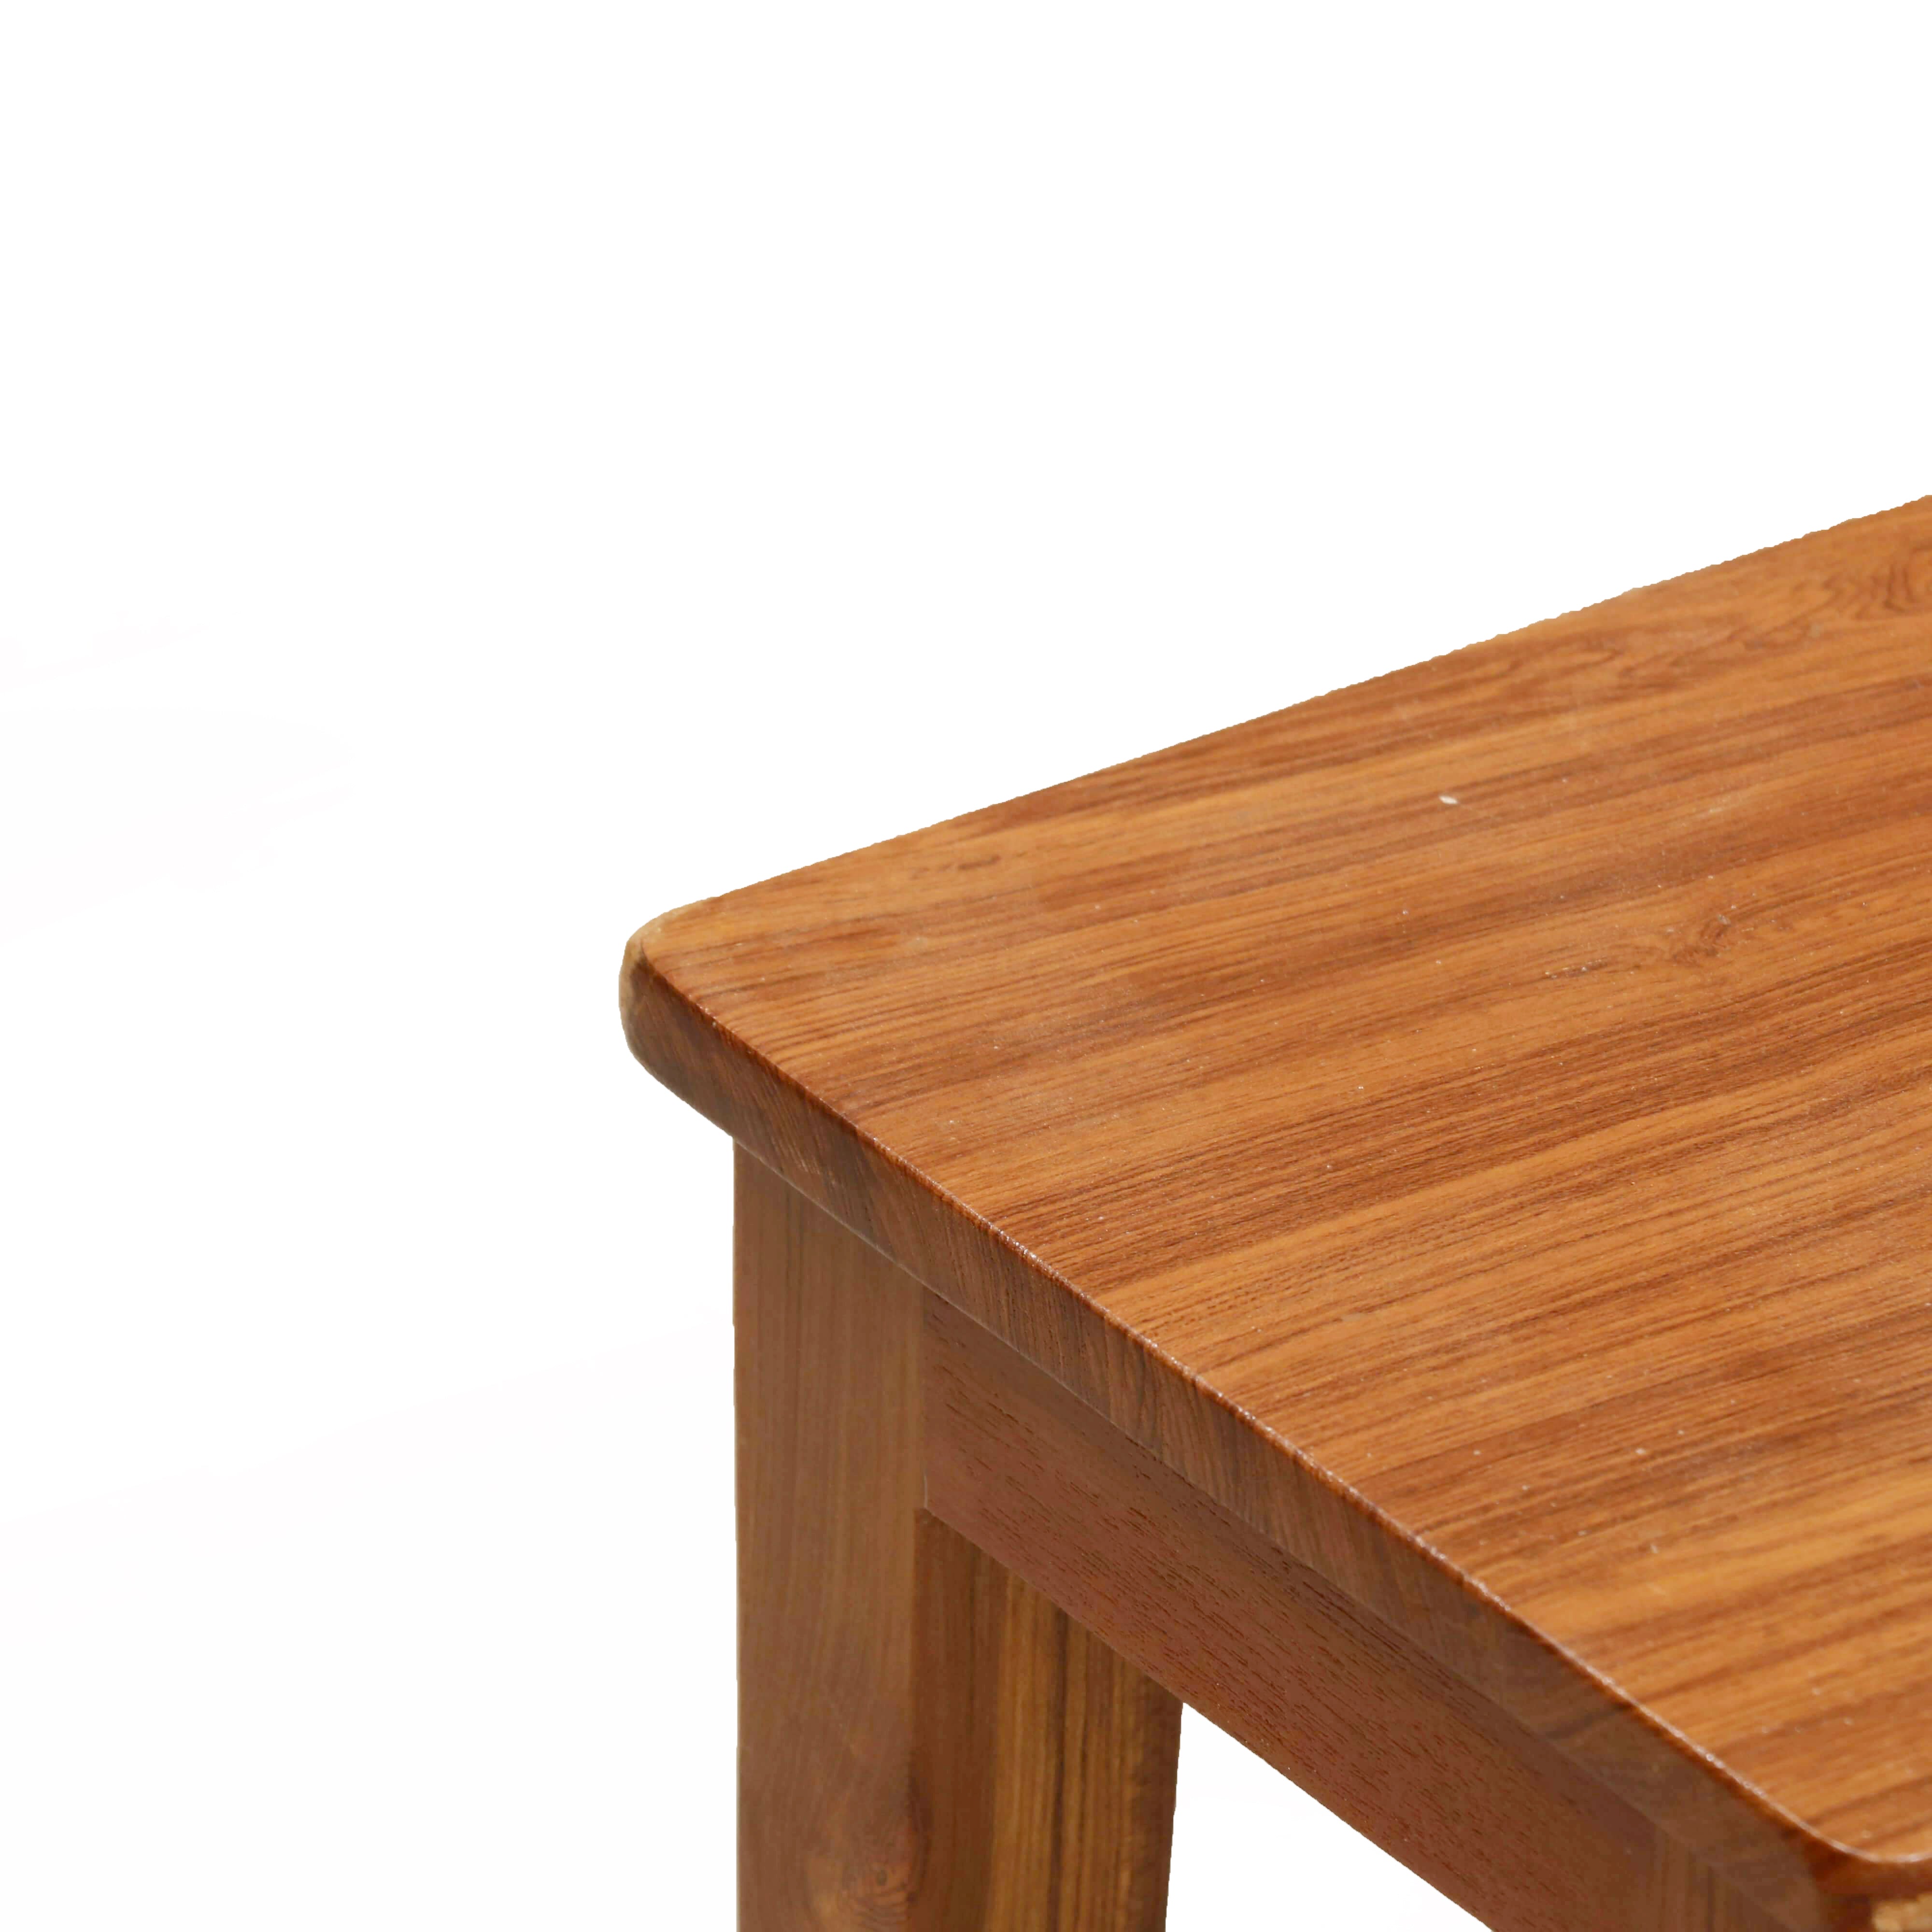 Quaint Wooden Bajot Table Bajot